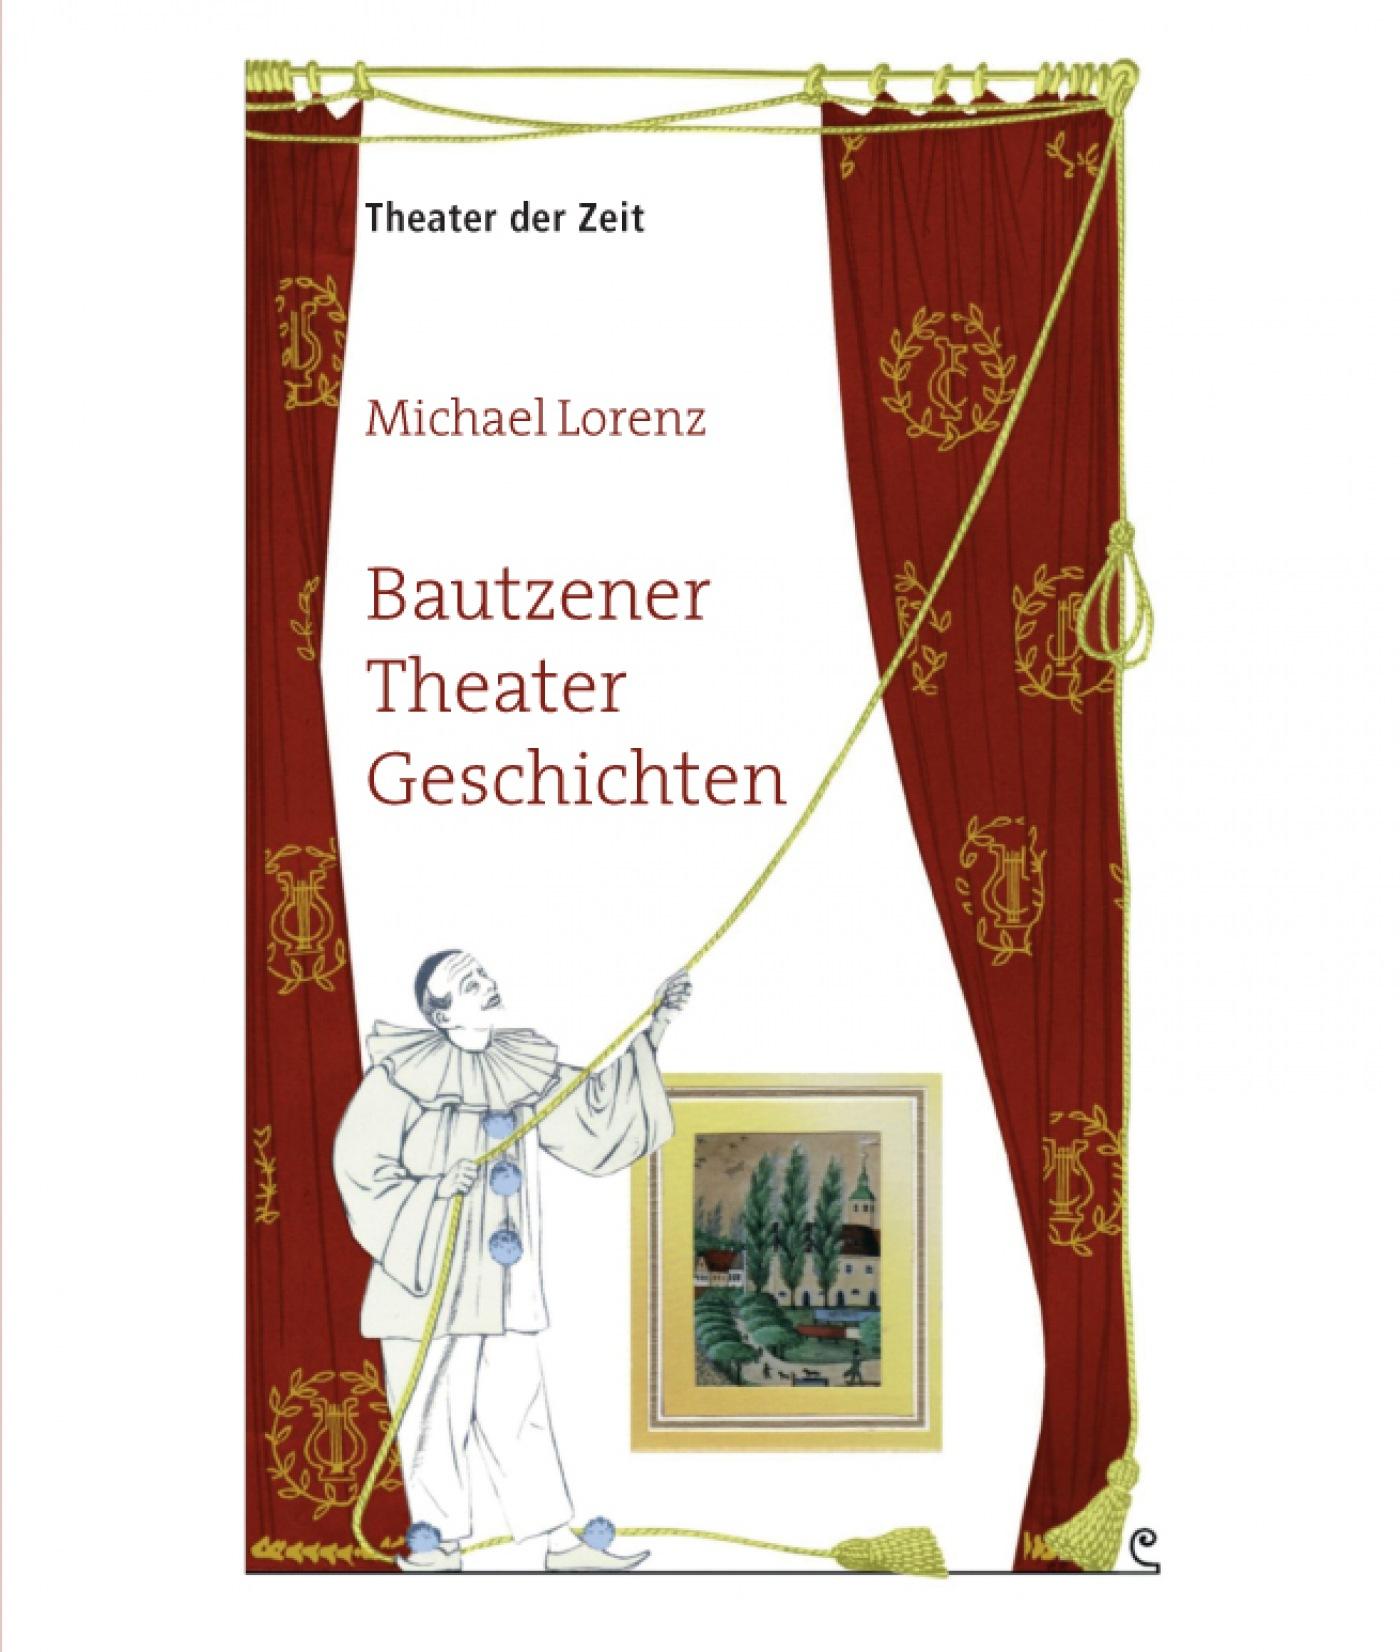 "Bautzener Theater Geschichten"